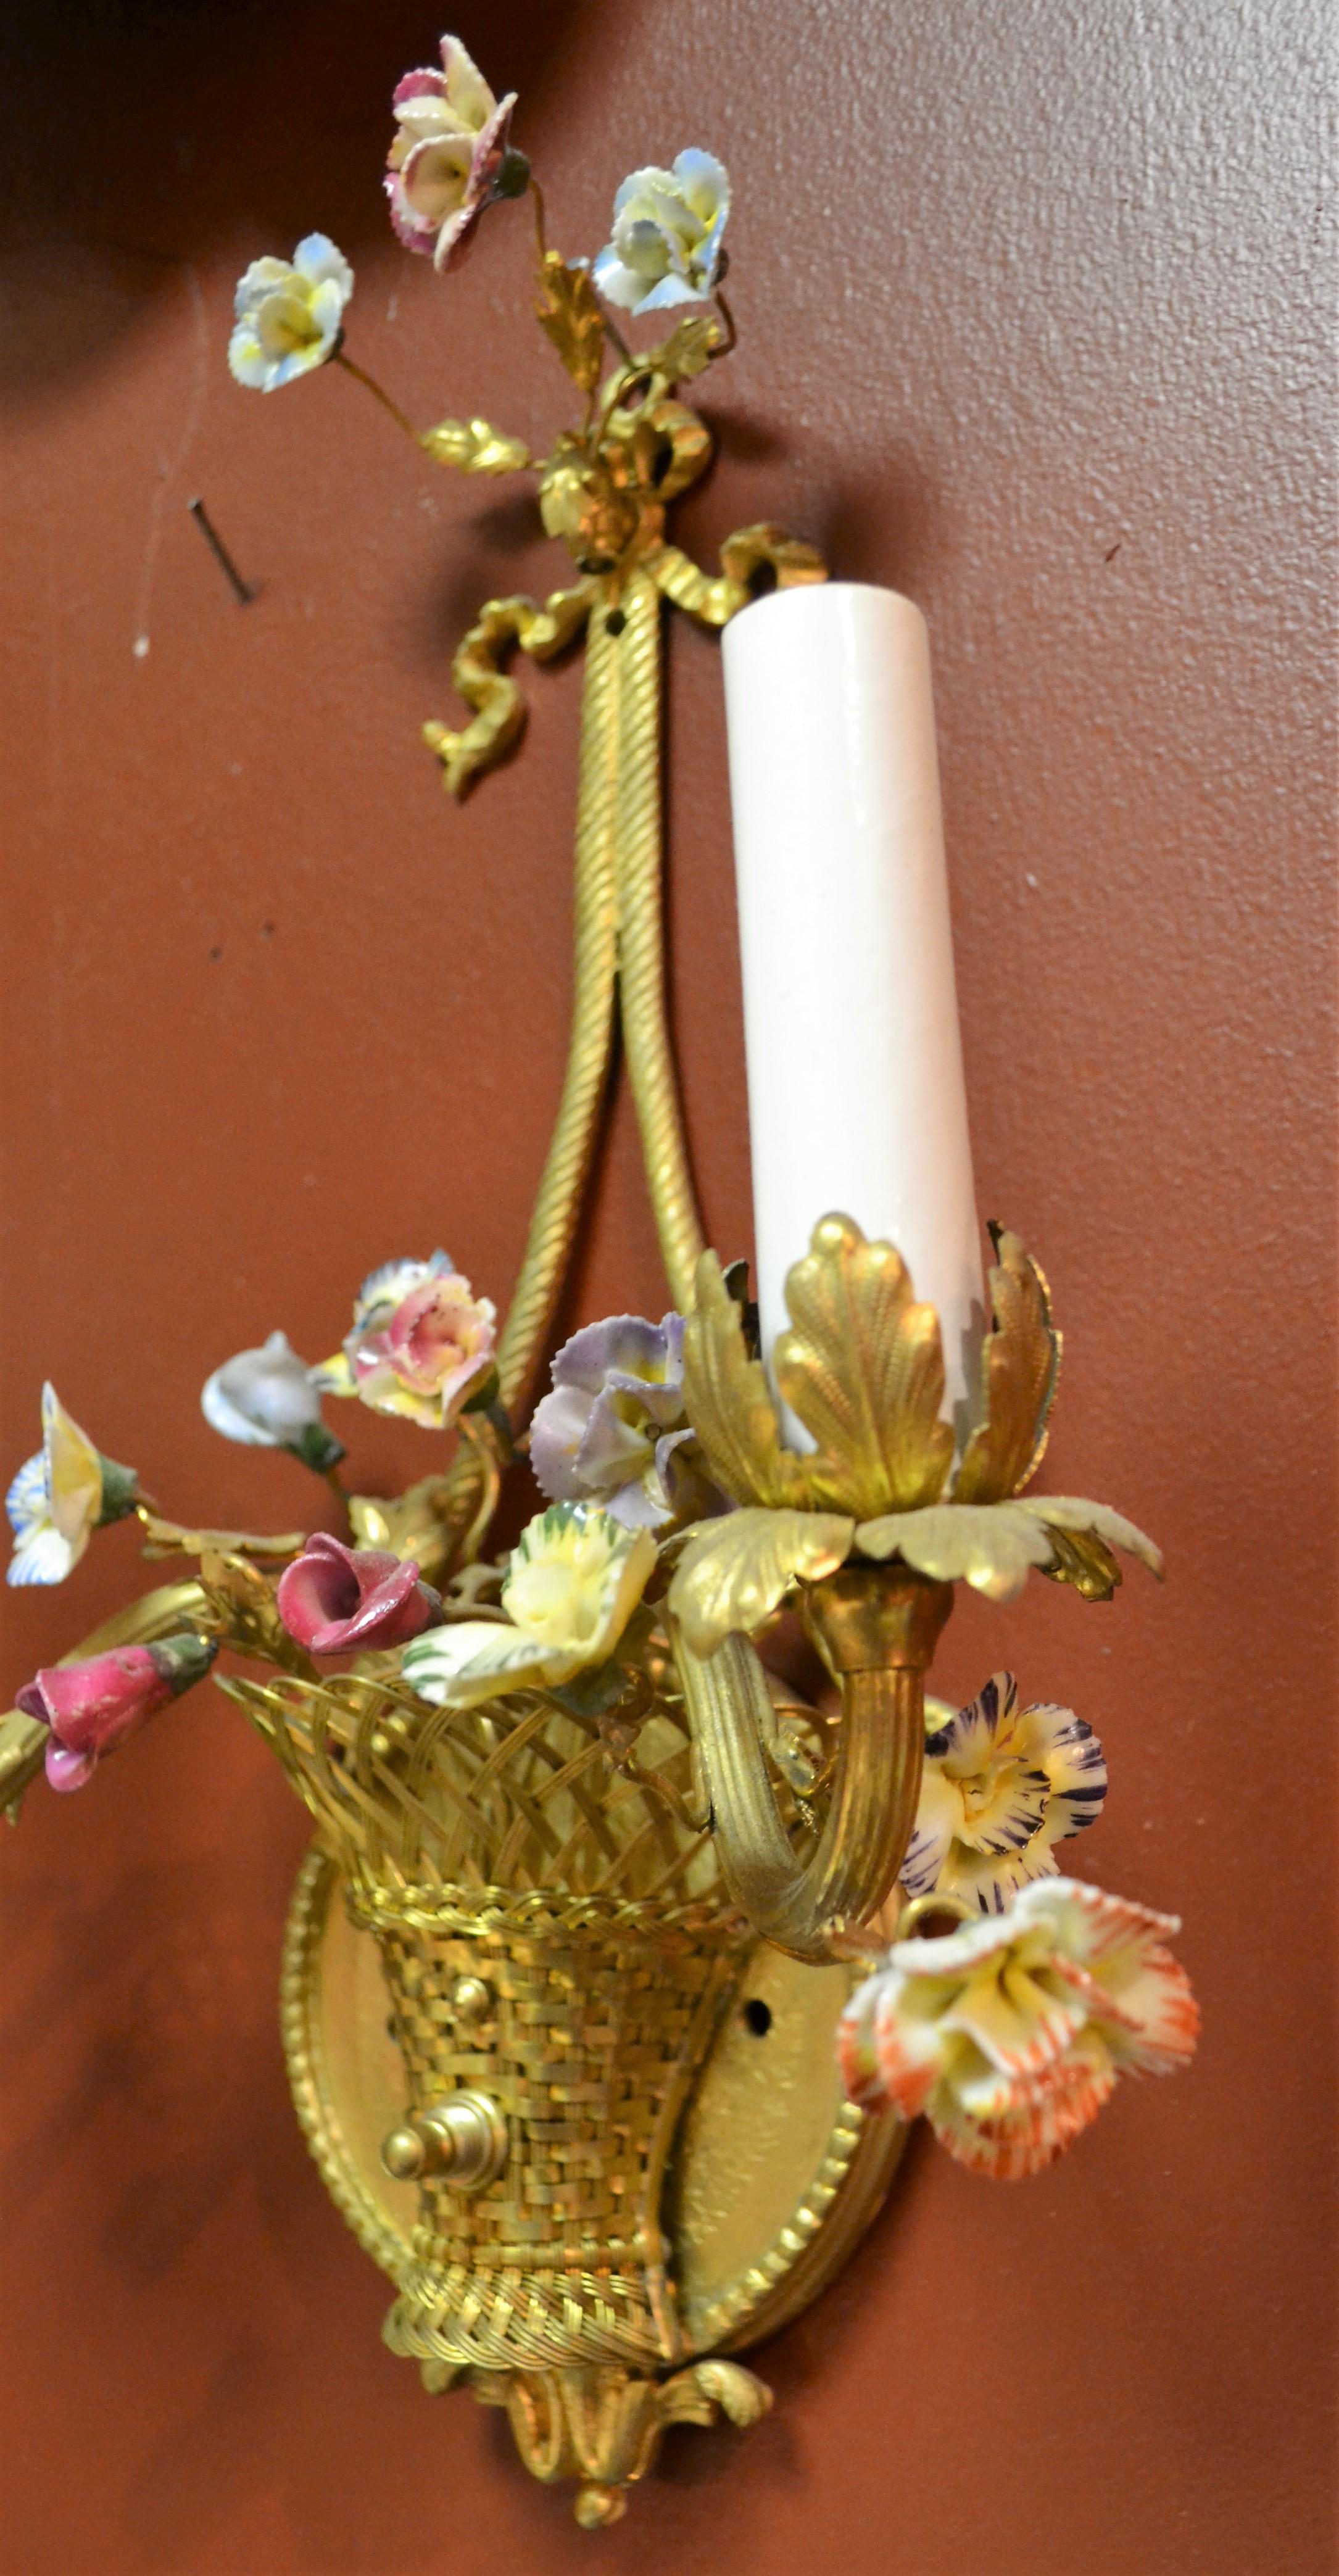 Pair of Antique French Bronze Doré Sconces with Porcelain Flowers 1